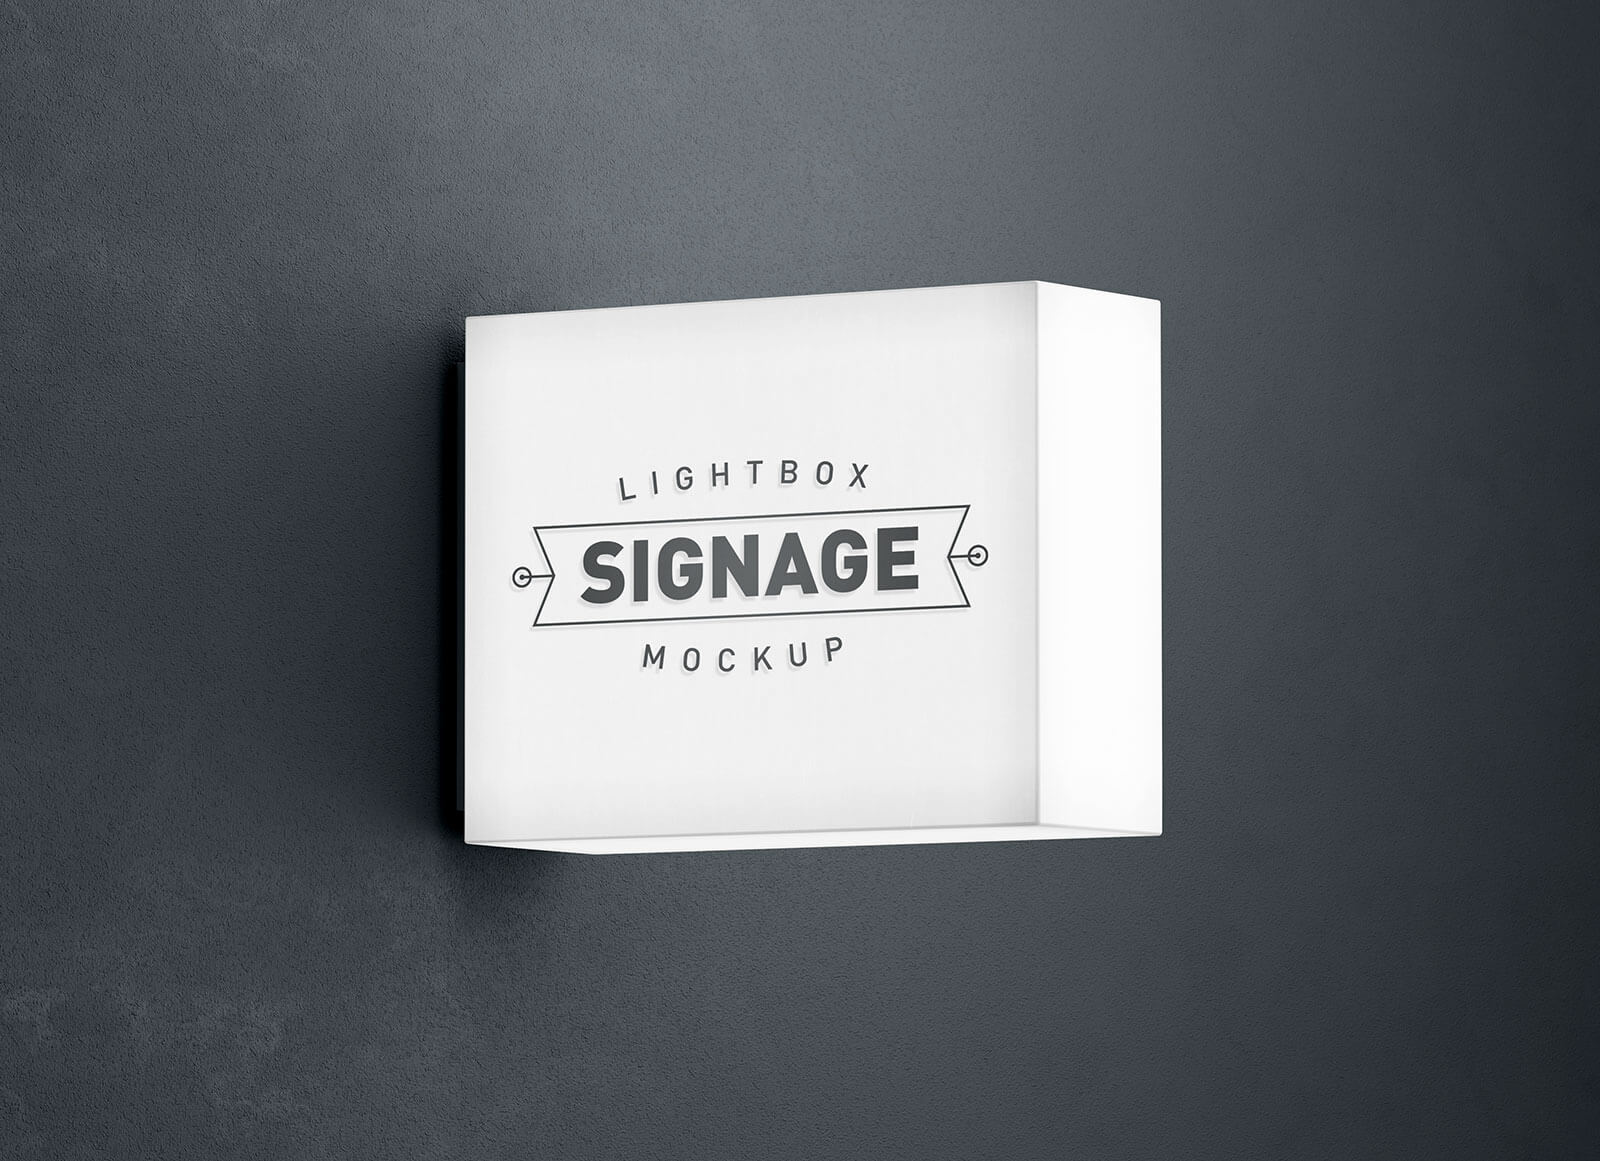 Free-Lightbox-Signage-Logo-Mockup-PSD